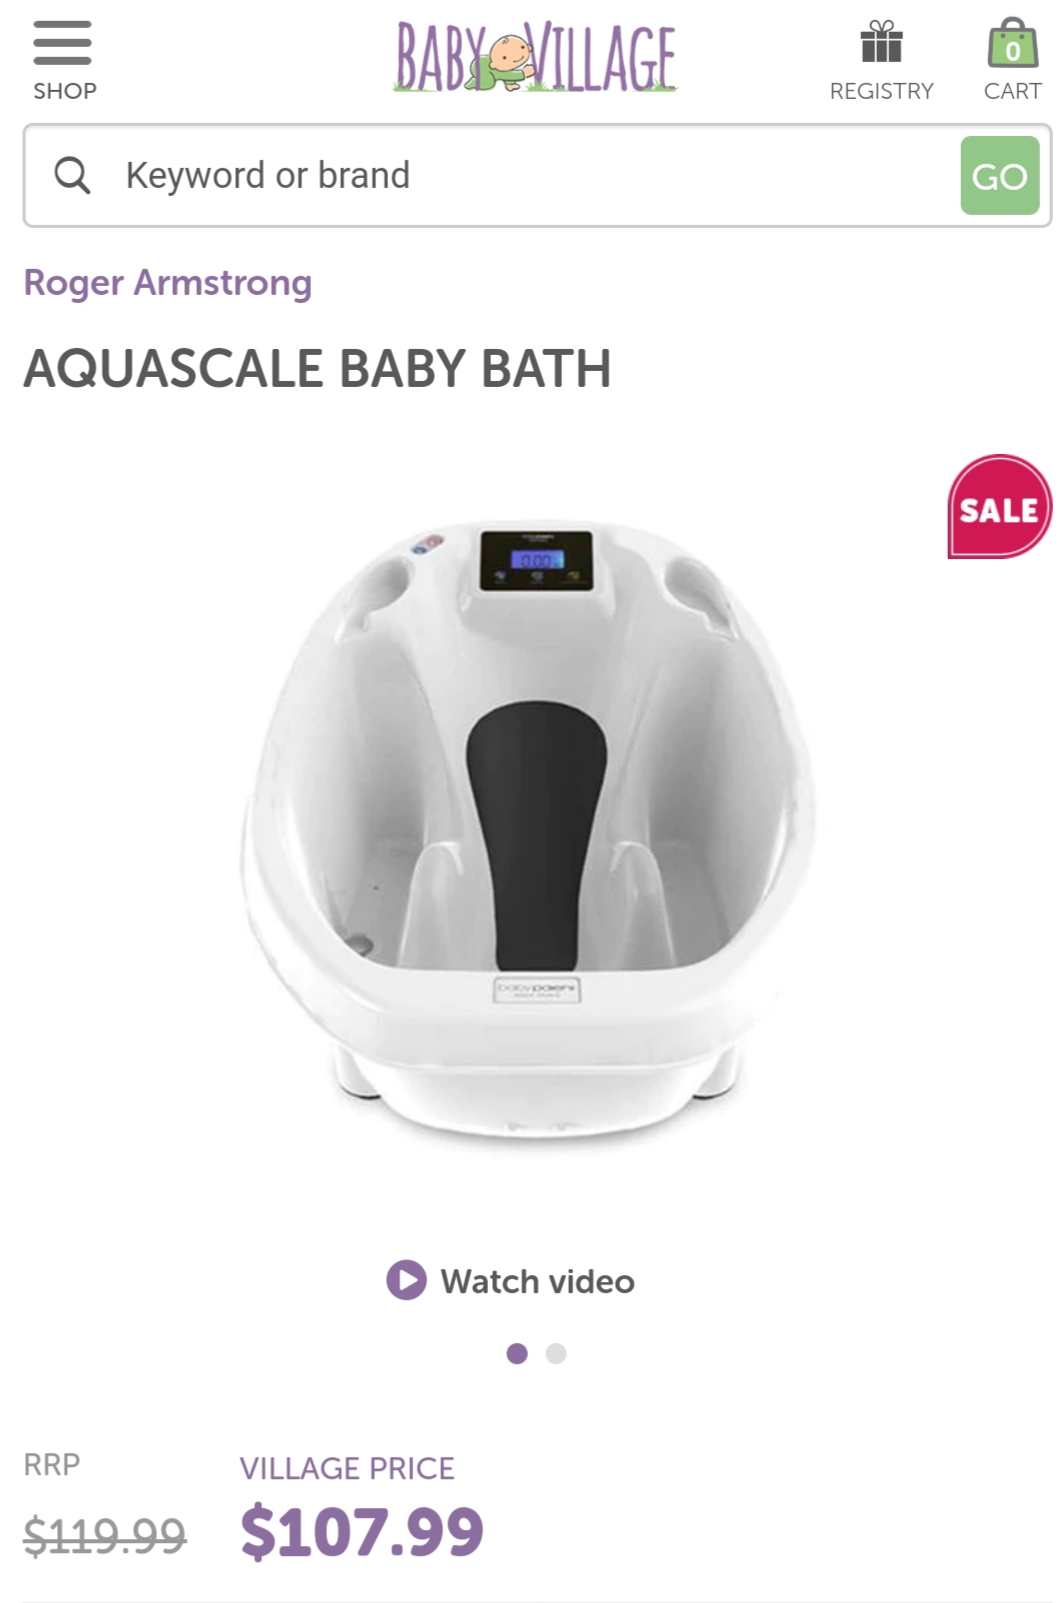 Aquascale baby bath